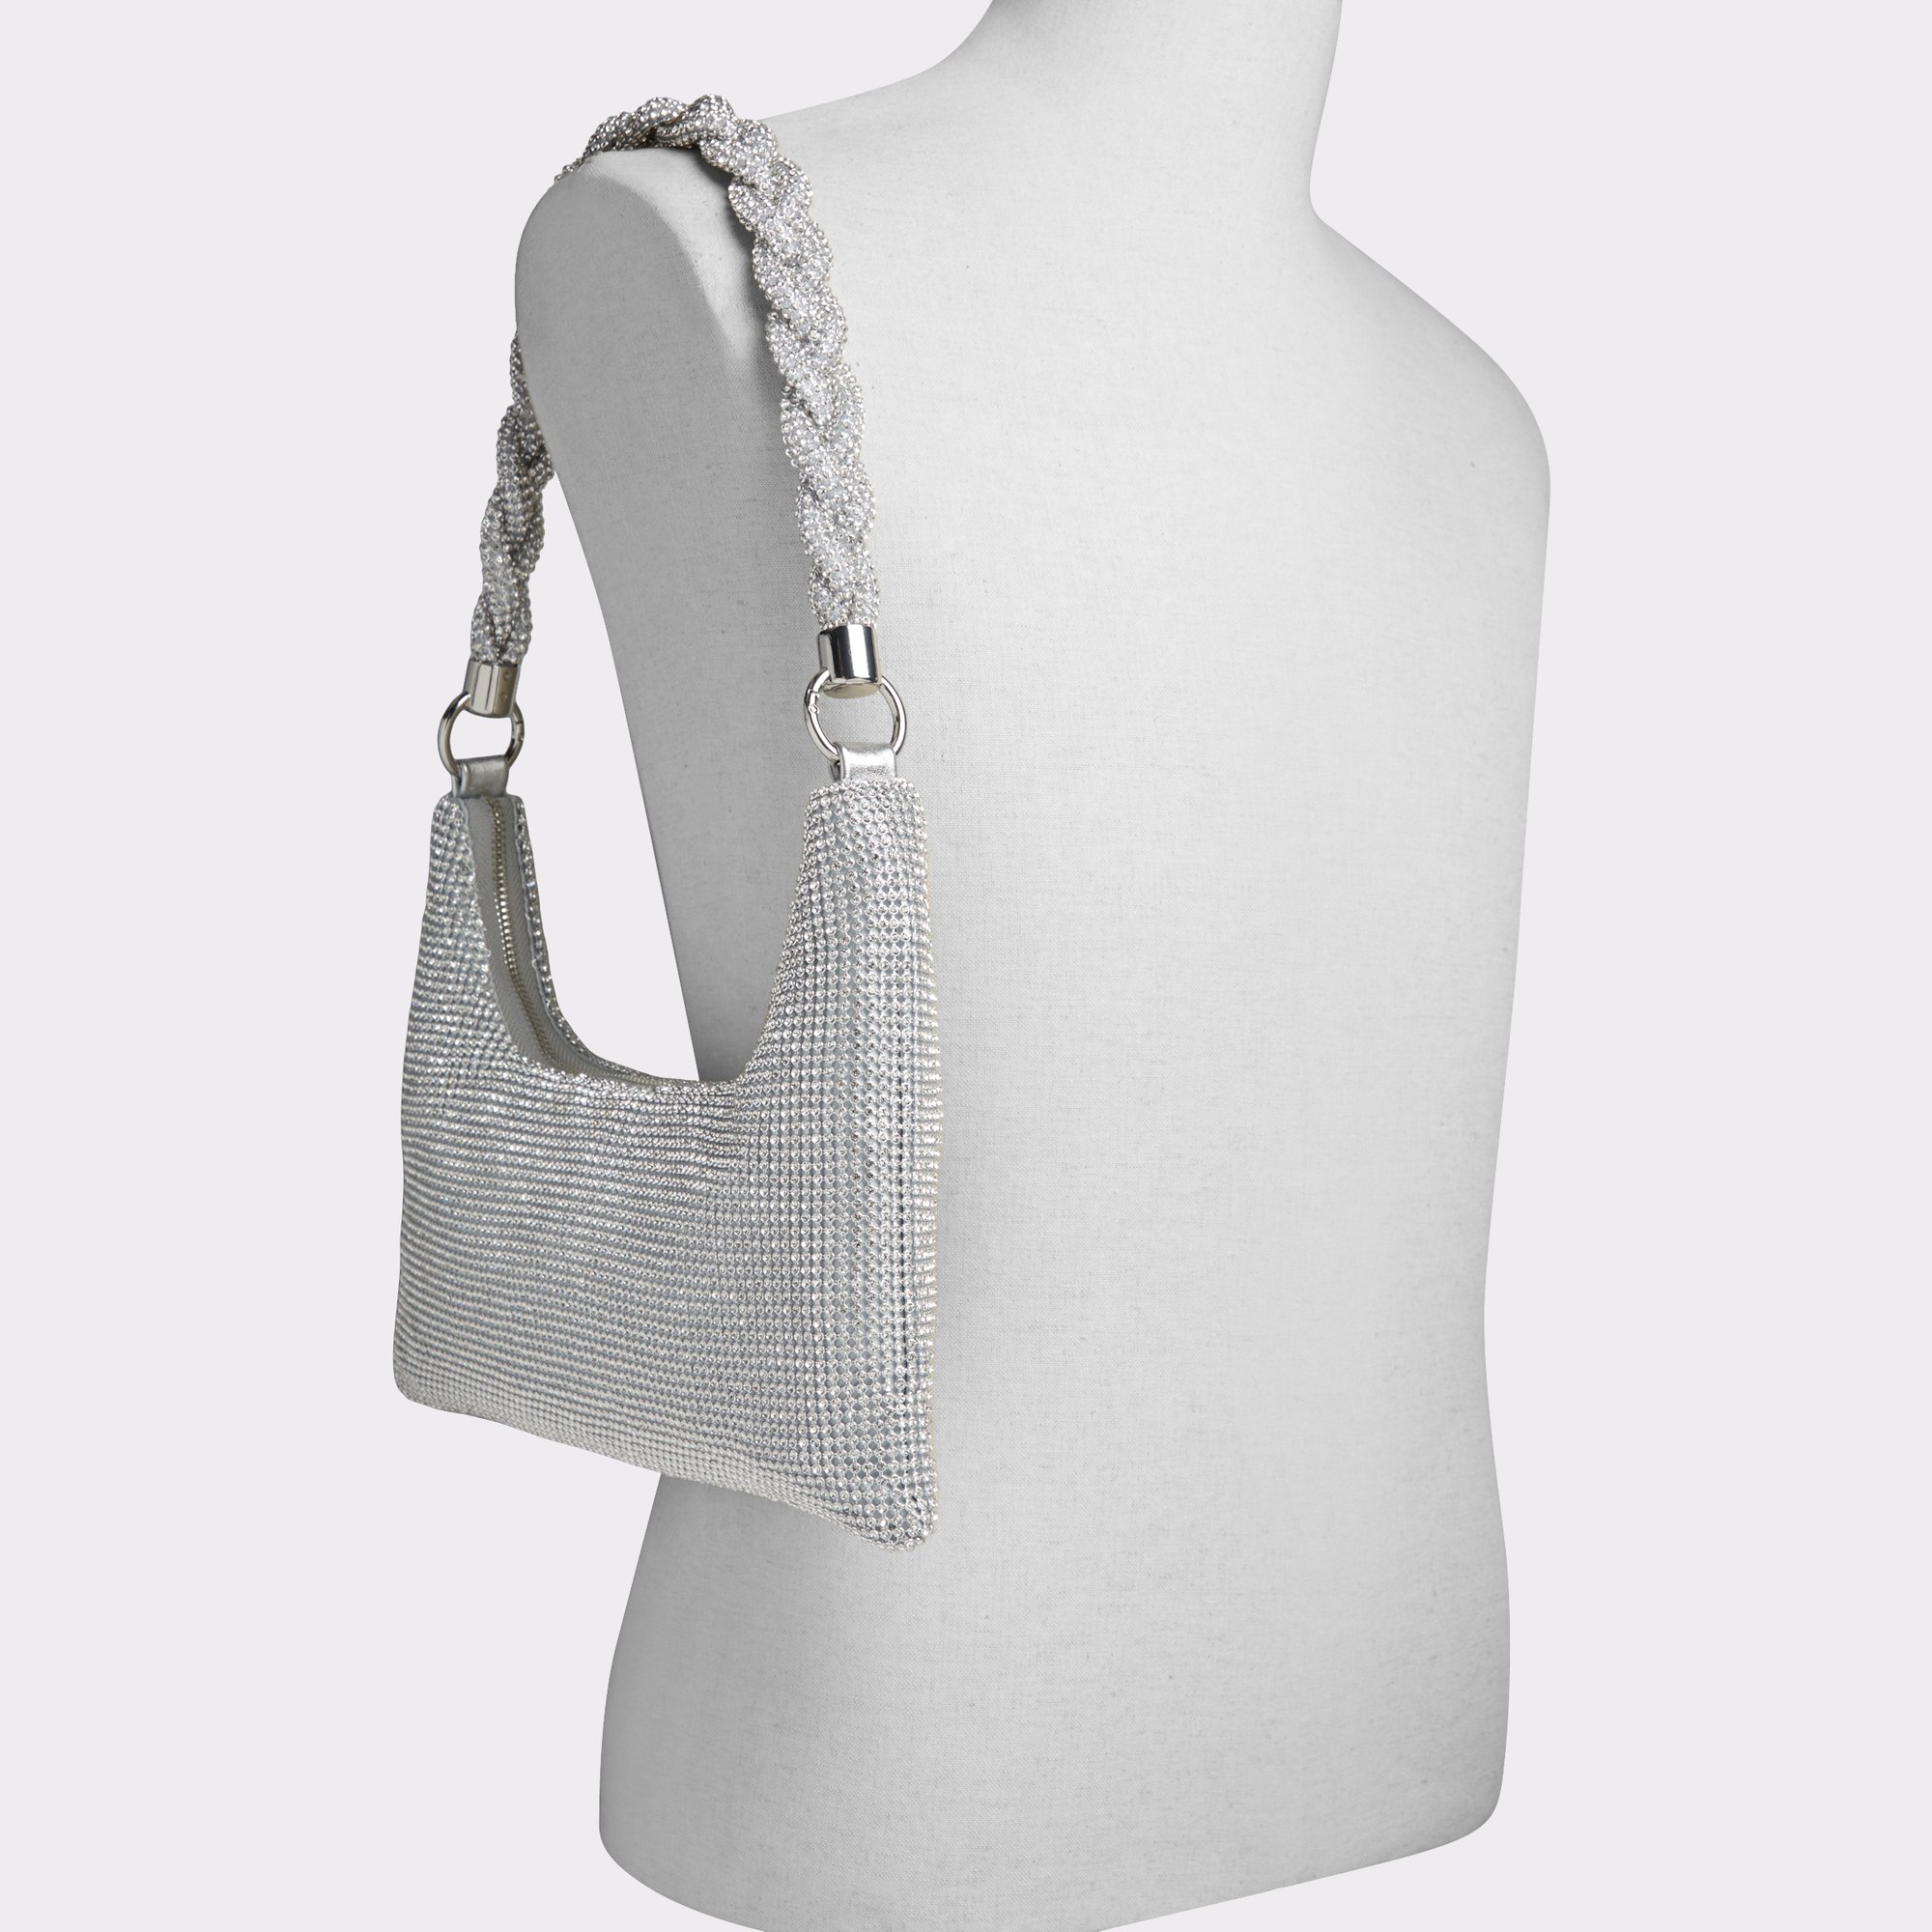 Marlysax Silver Women's Shoulder Bags | ALDO US